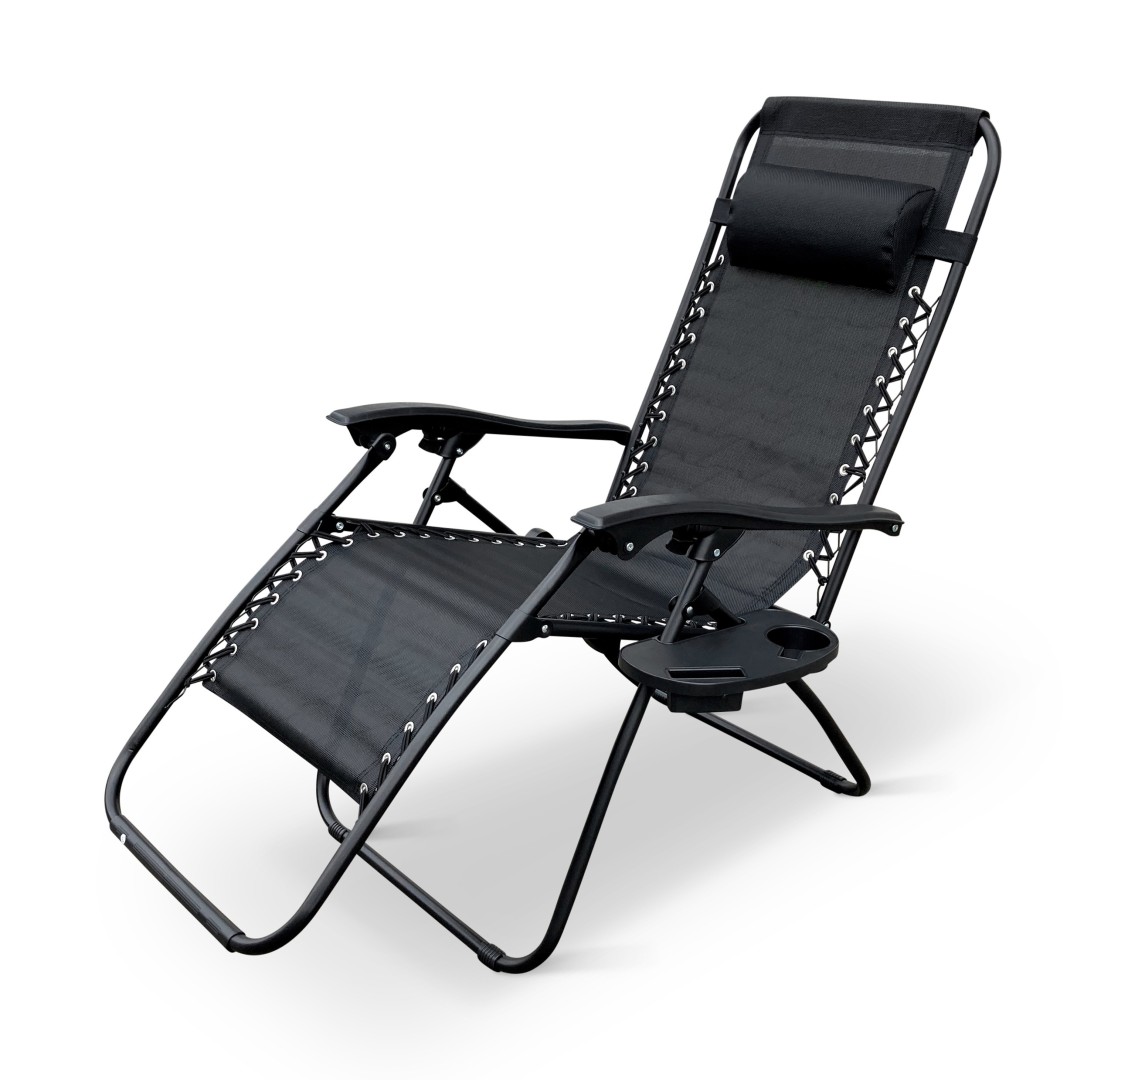 Texim DALLAS - relaxační křeslo černé + držák na hrnek a mobil zdarma, ocel + textil